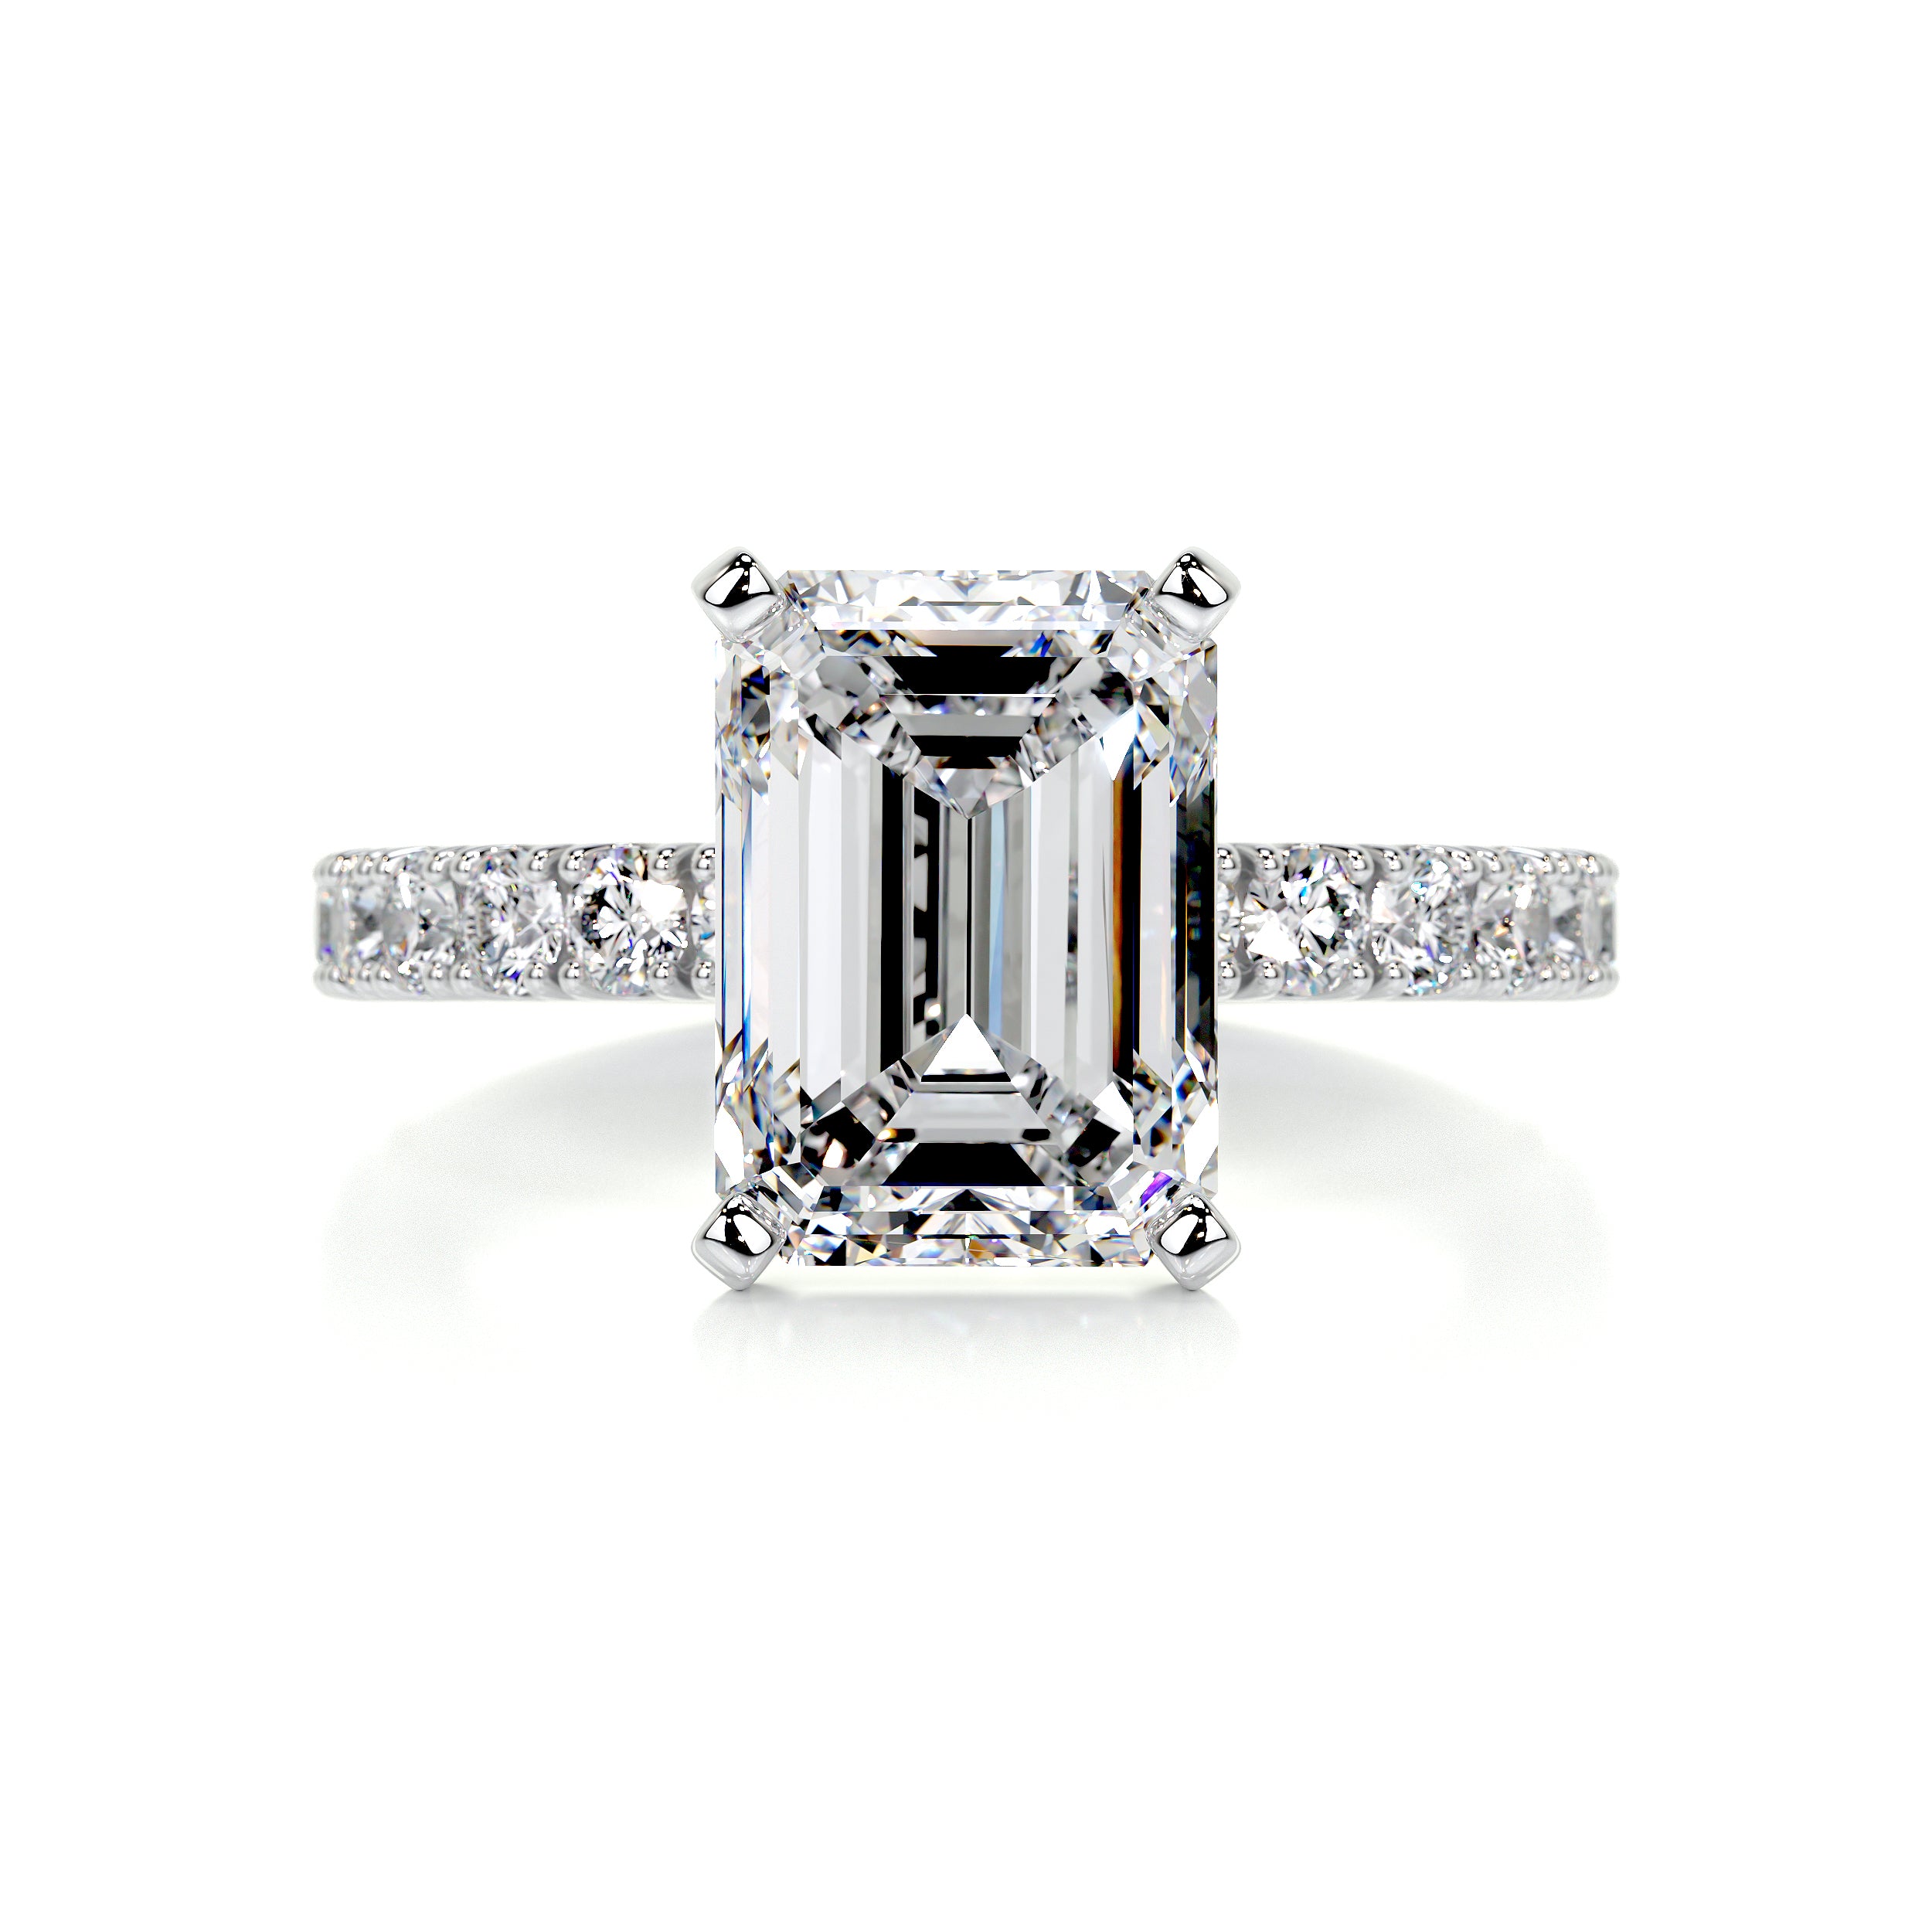 Royal Diamond Engagement Ring   (3.5 Carat) -14K White Gold